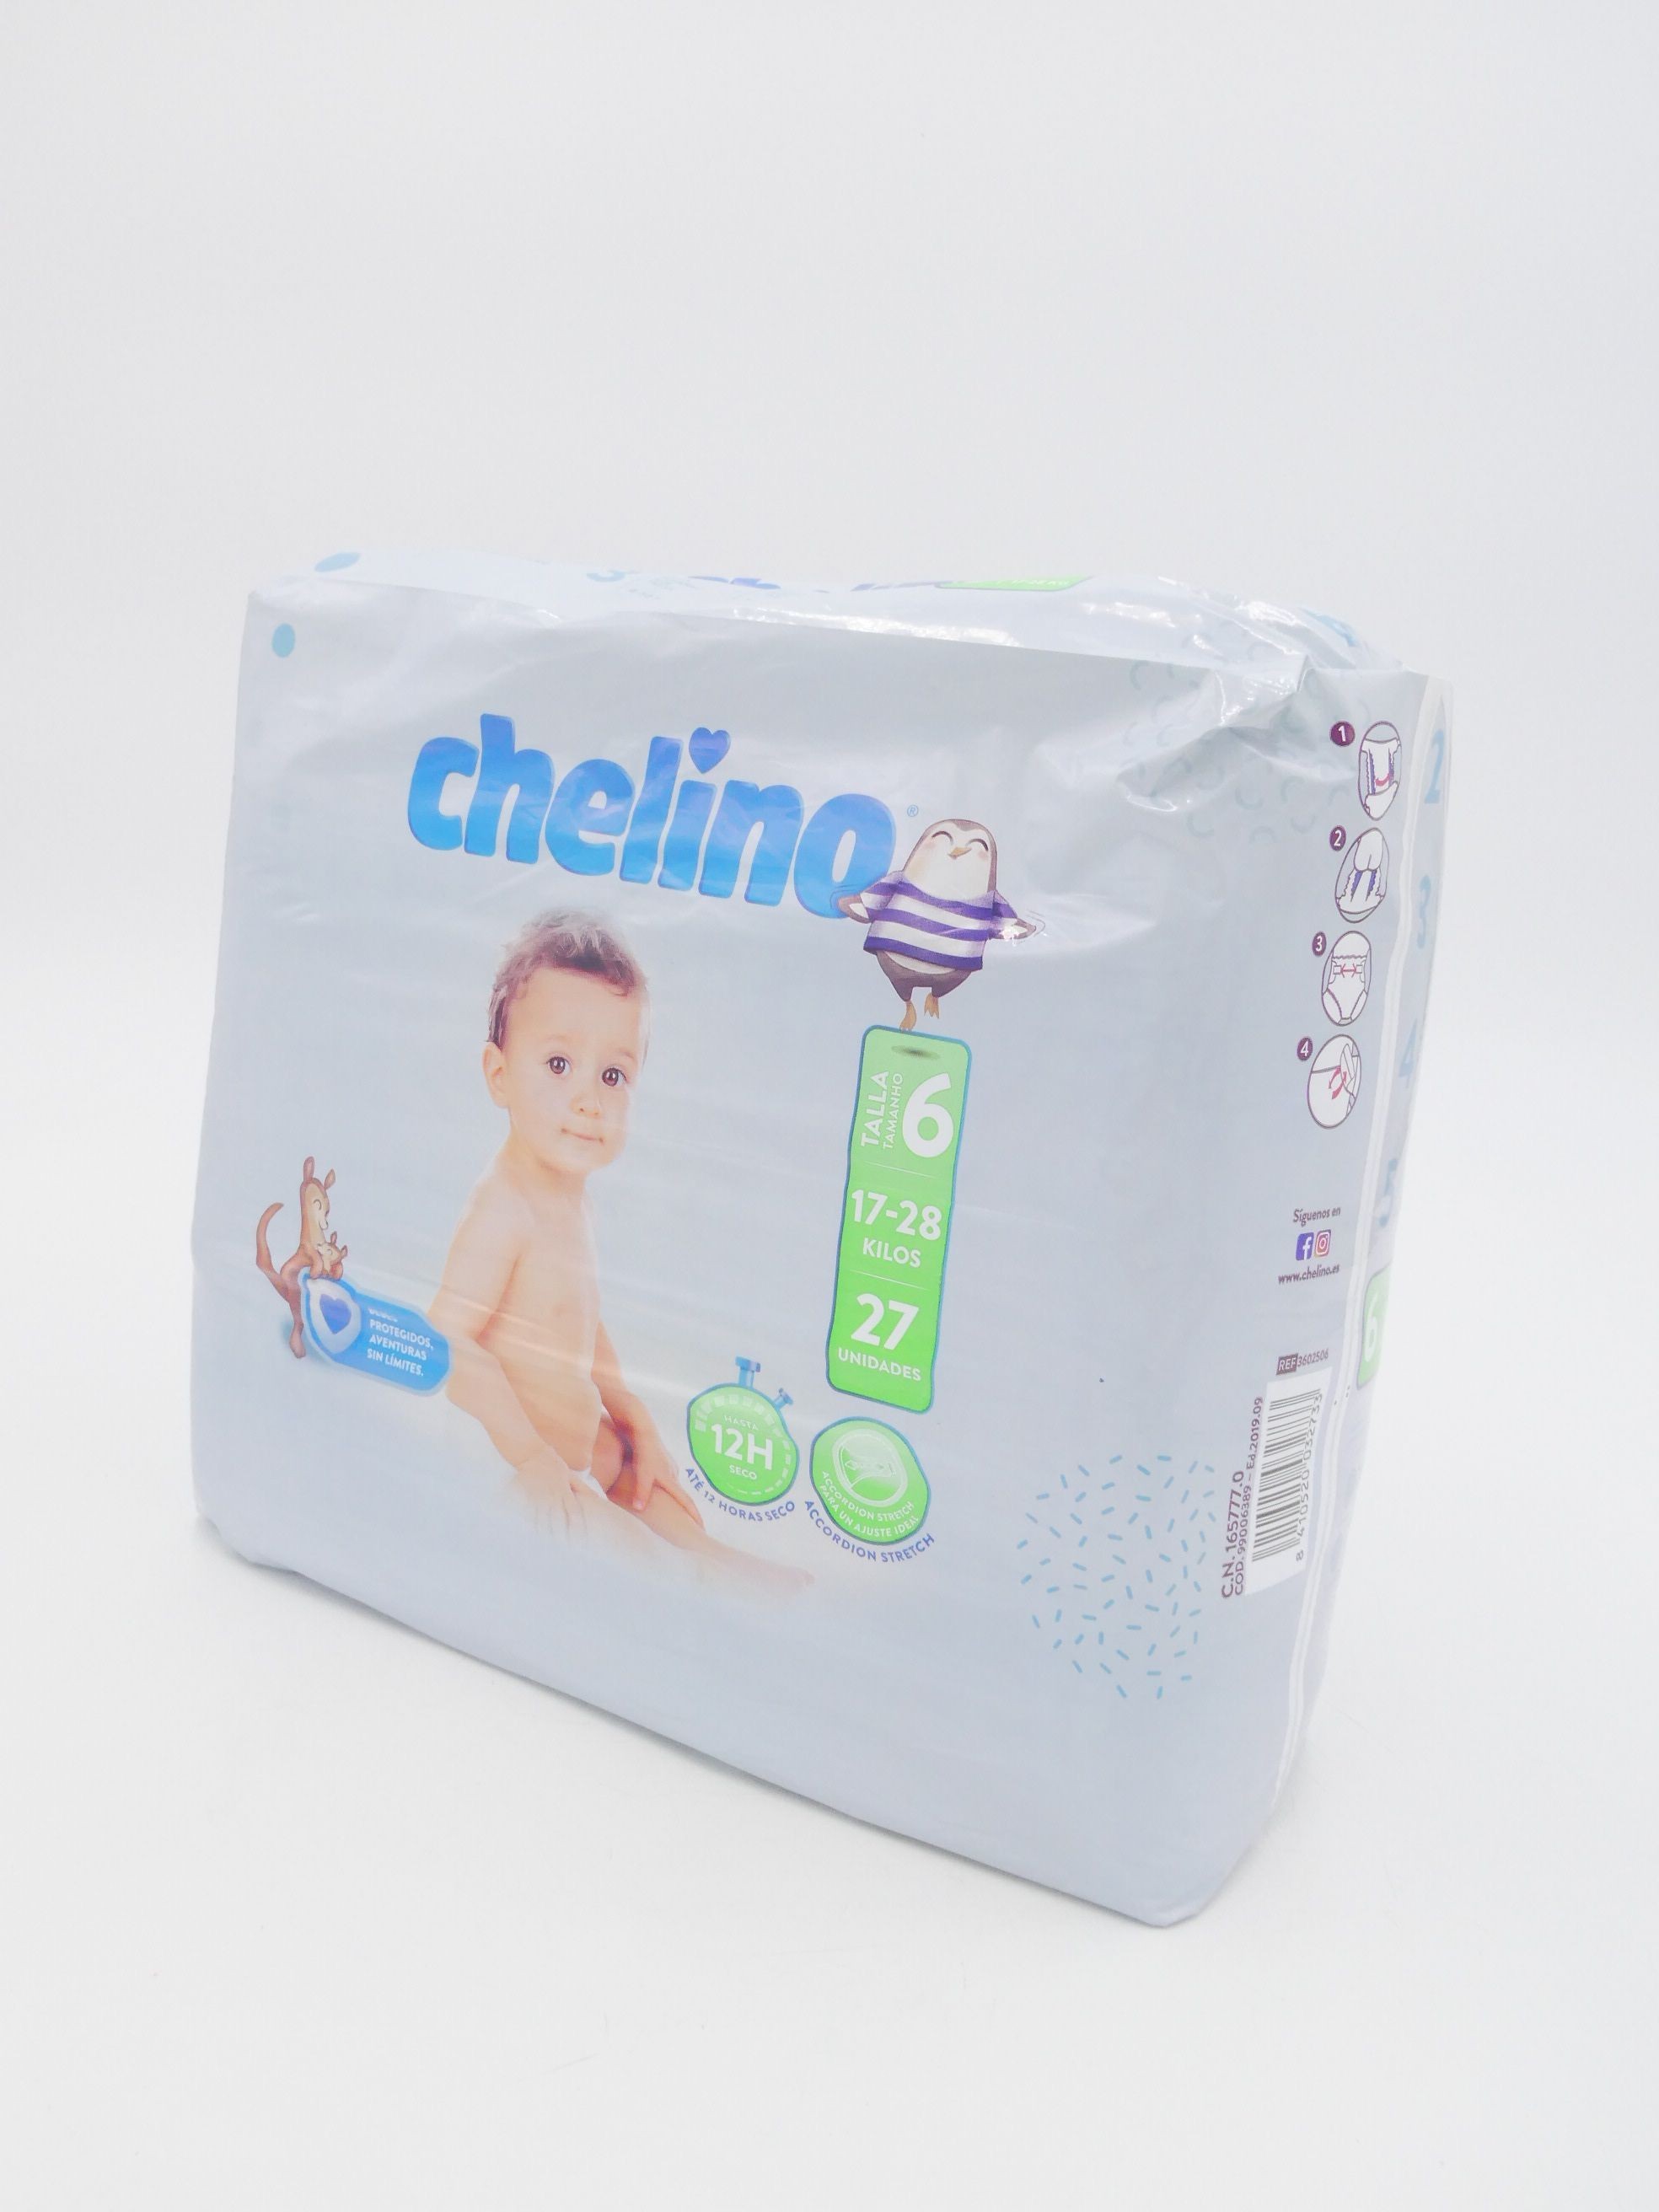 Chelino Pañal infantil Talla 3 (4-10kg), 36 Unidades ( Paquete de